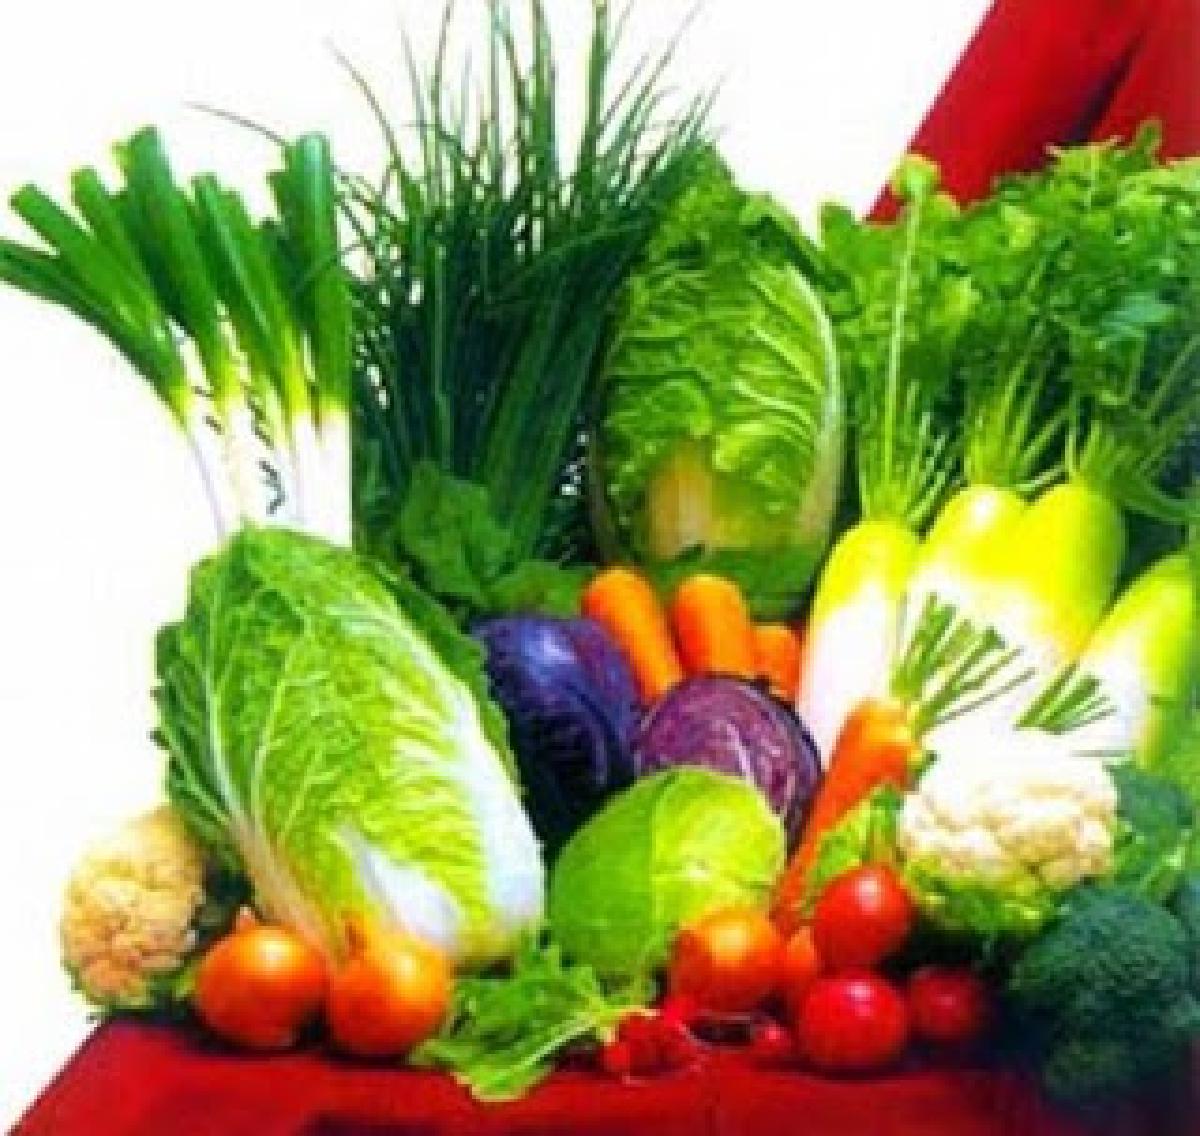 Χόρτα και Λαχανικά: διατήρηση κατά το μαγείρεμα και πέψη χόρτων/λαχανικών